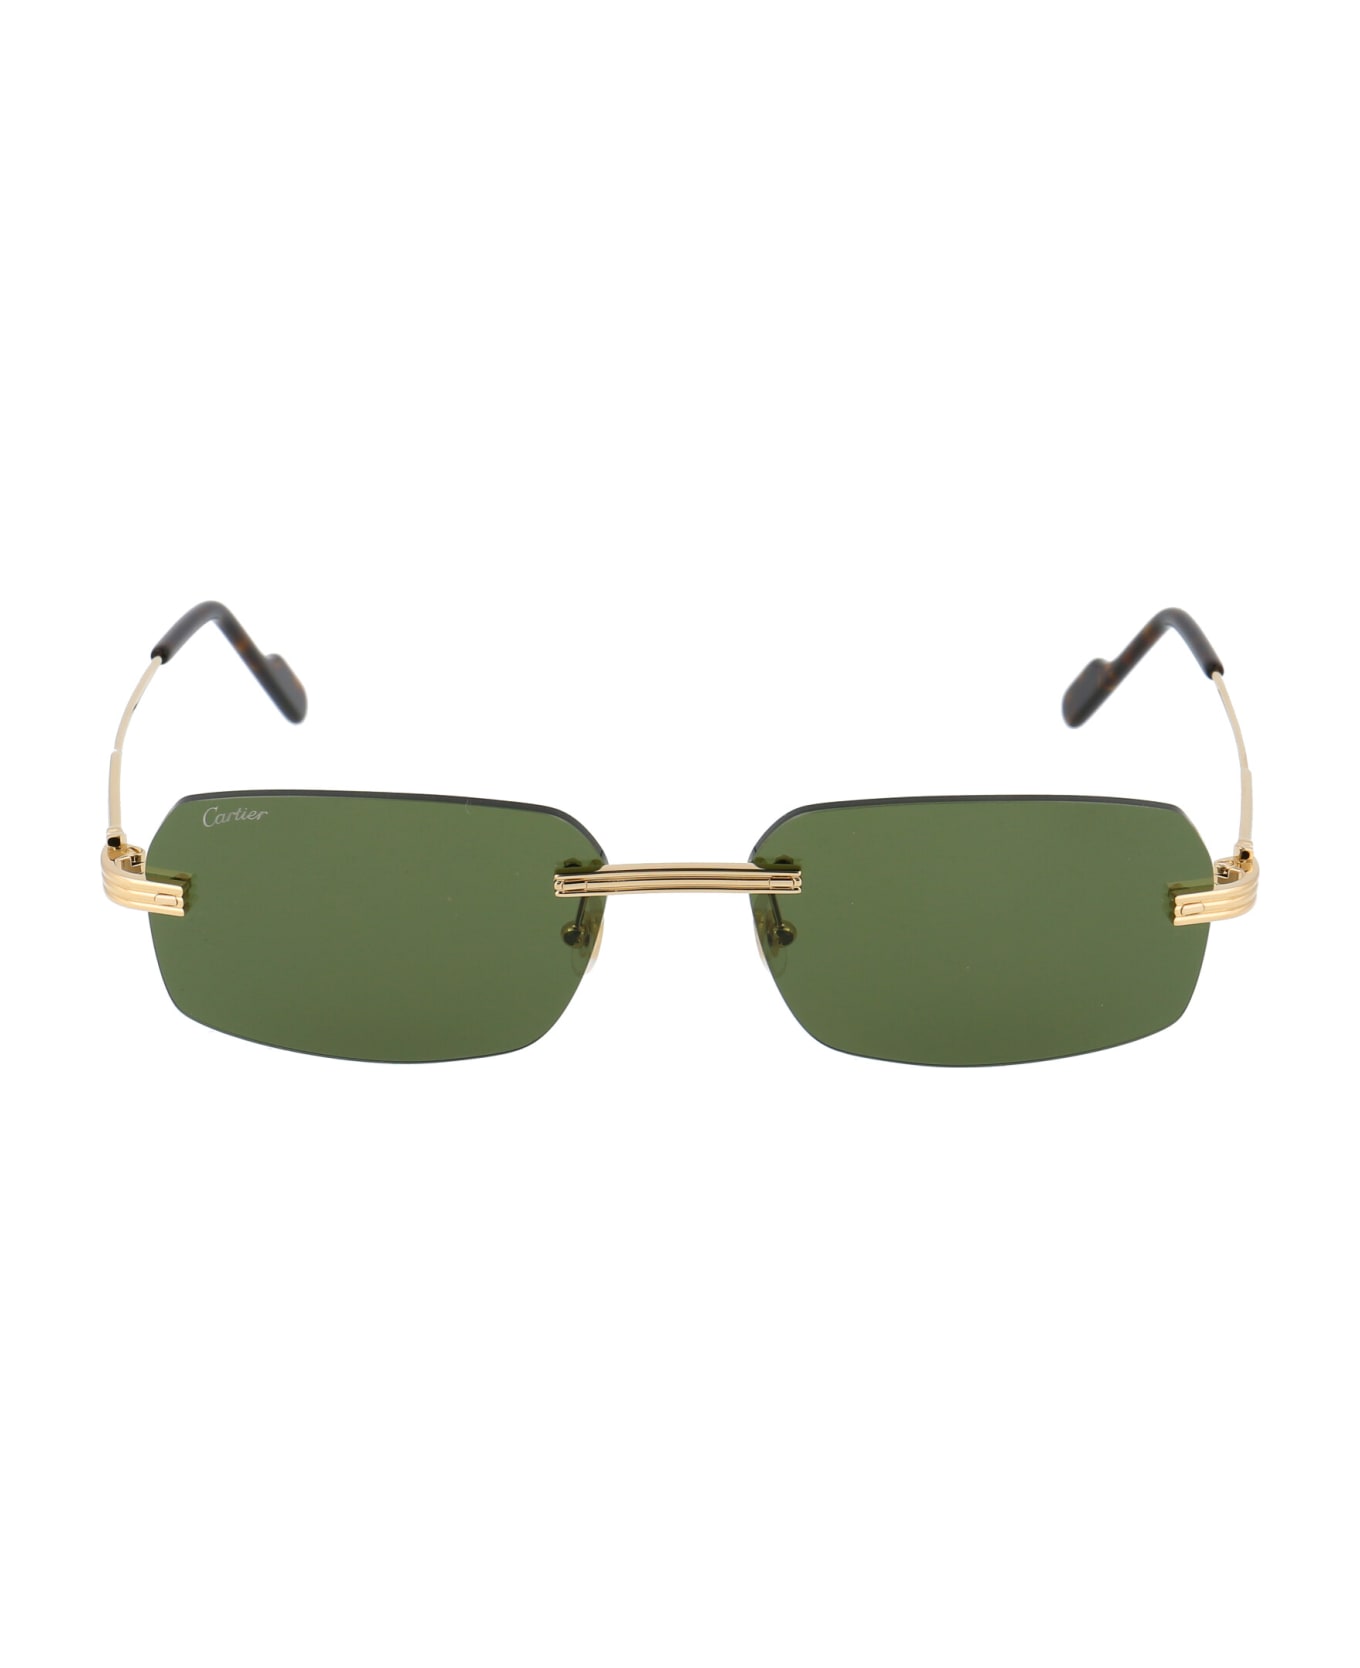 Cartier Eyewear Ct0271s Sunglasses - 002 GOLD GOLD GREEN